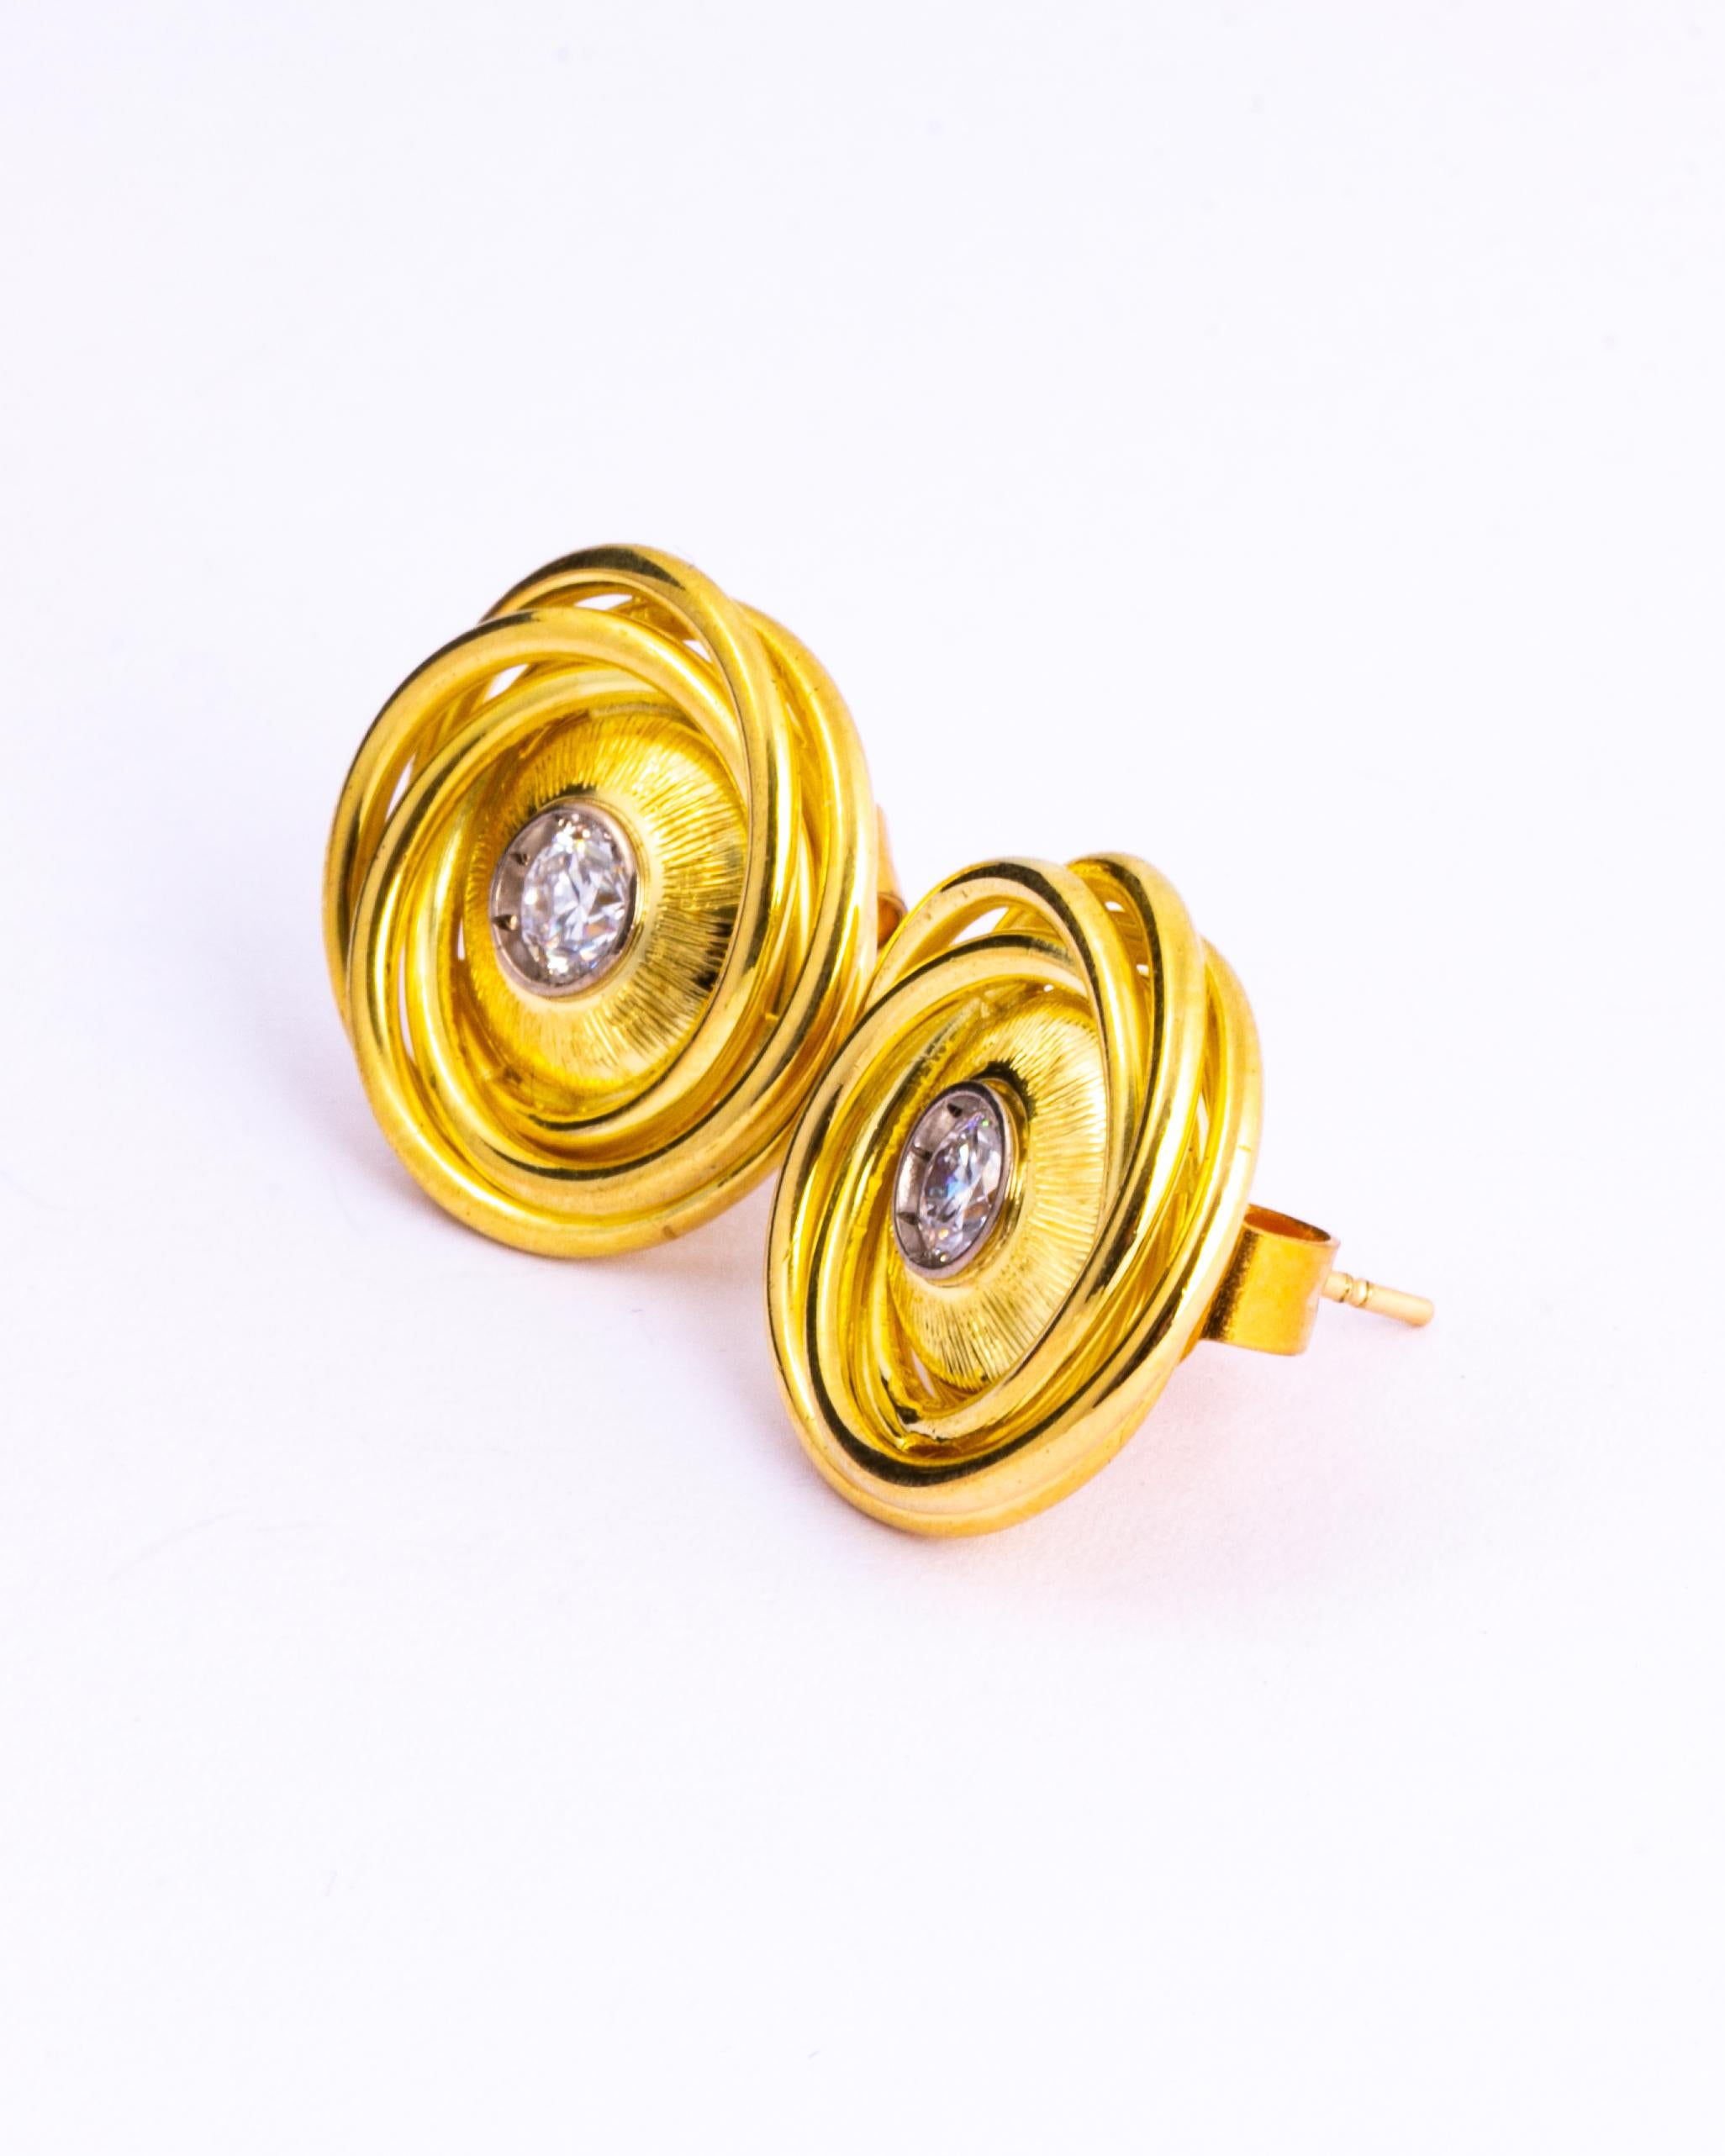 Cette paire de boucles d'oreilles classiques en forme de tourbillon de diamants contient un total de 80pts de diamants de taille européenne ancienne, de couleur G/H VS1. Elles sont brillantes et étincelantes et sont serties dans le tourbillon d'or.